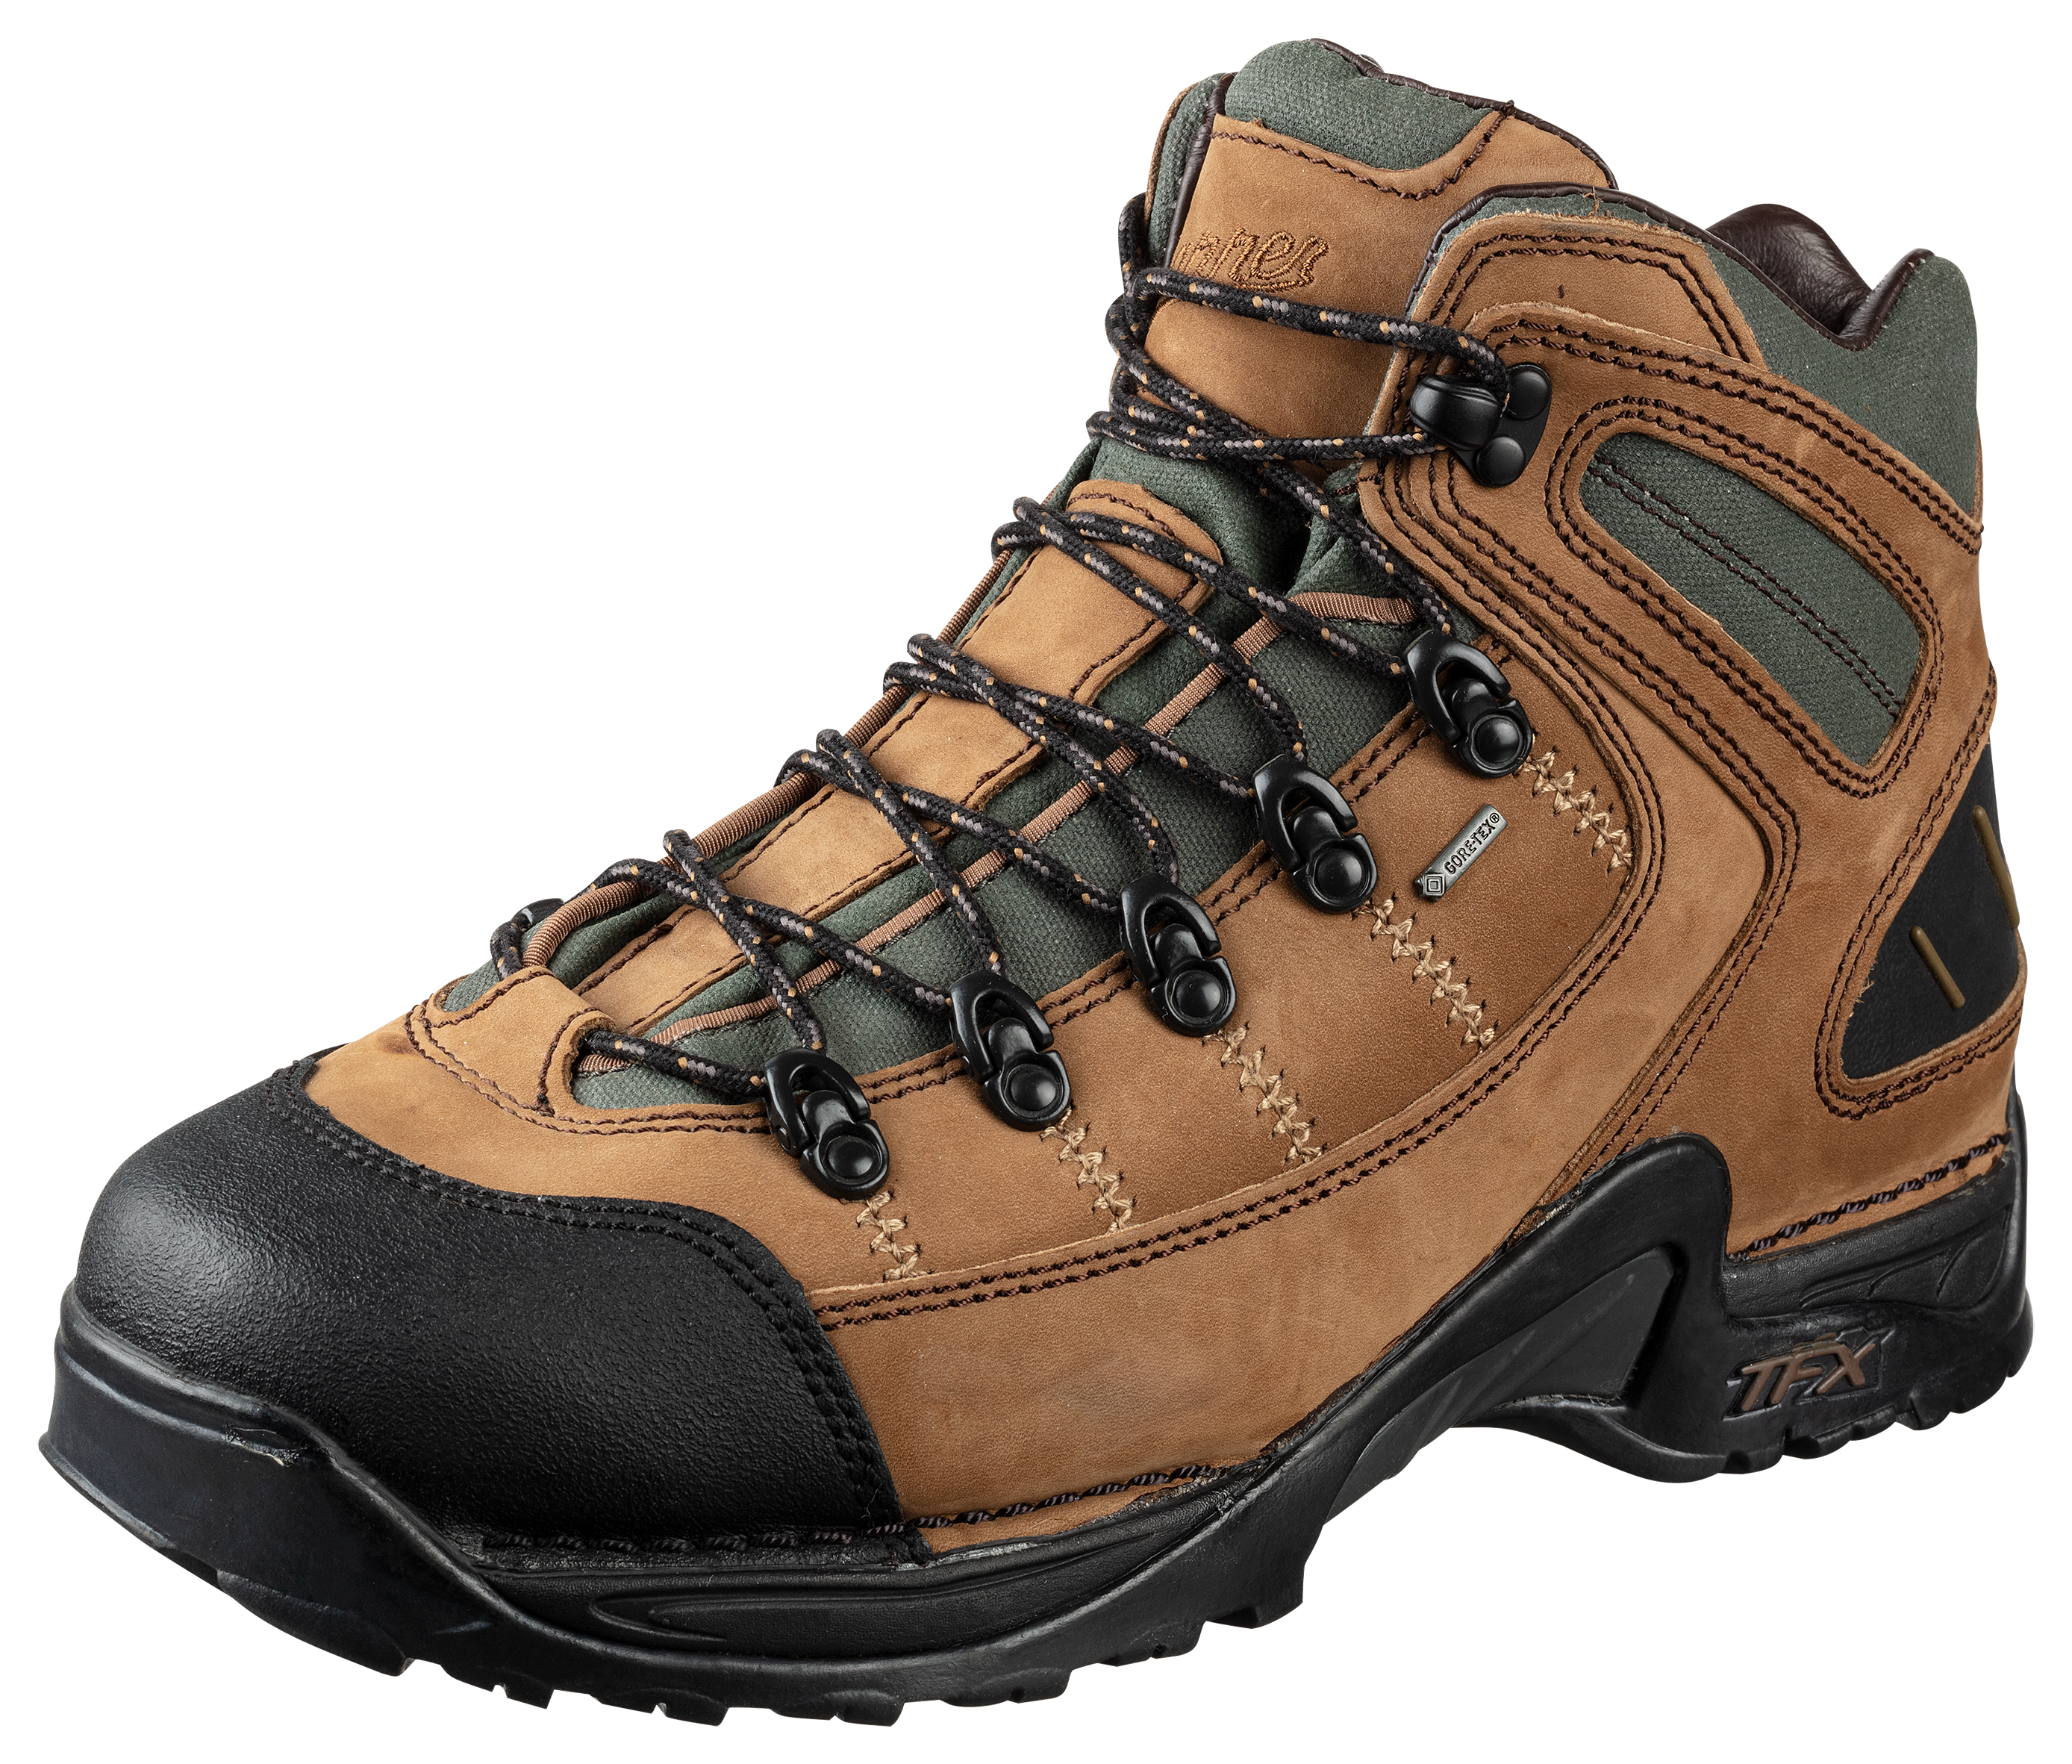 Danner 453 GORE-TEX Waterproof Hiking Boots for Men - Dark Tan - 9.5M